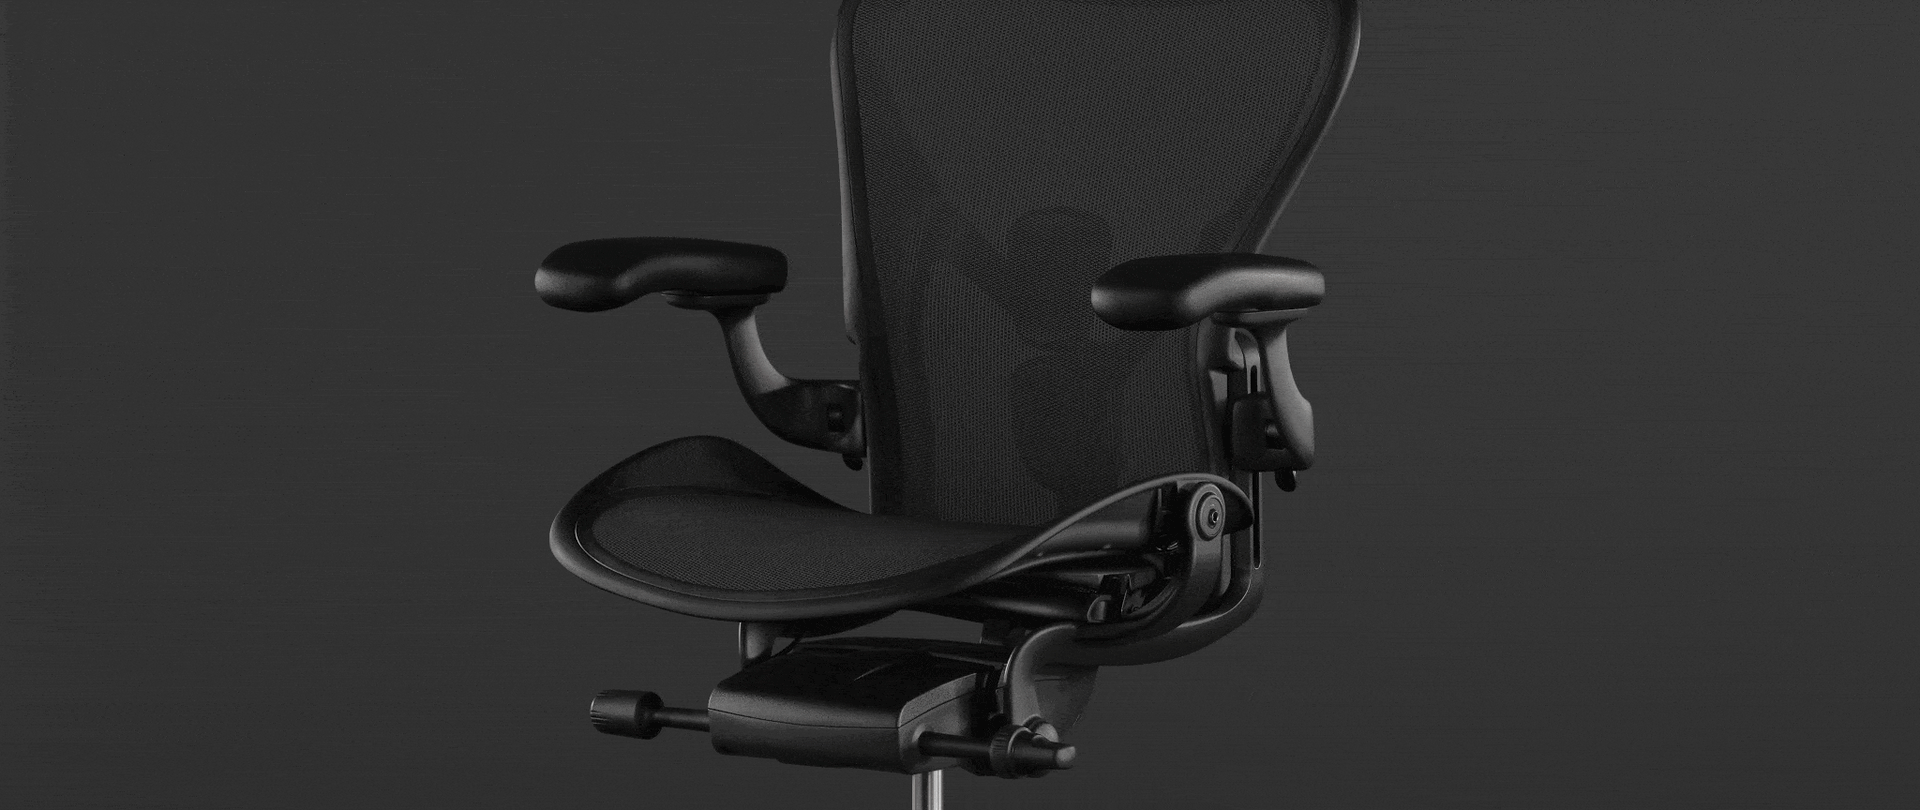 Une animation sur la photo d’un siège Aeron noir montre comment le système d’inclinaison du siège permet de bouger naturellement et de passer d’une position droite à une position inclinée simplement et en douceur.